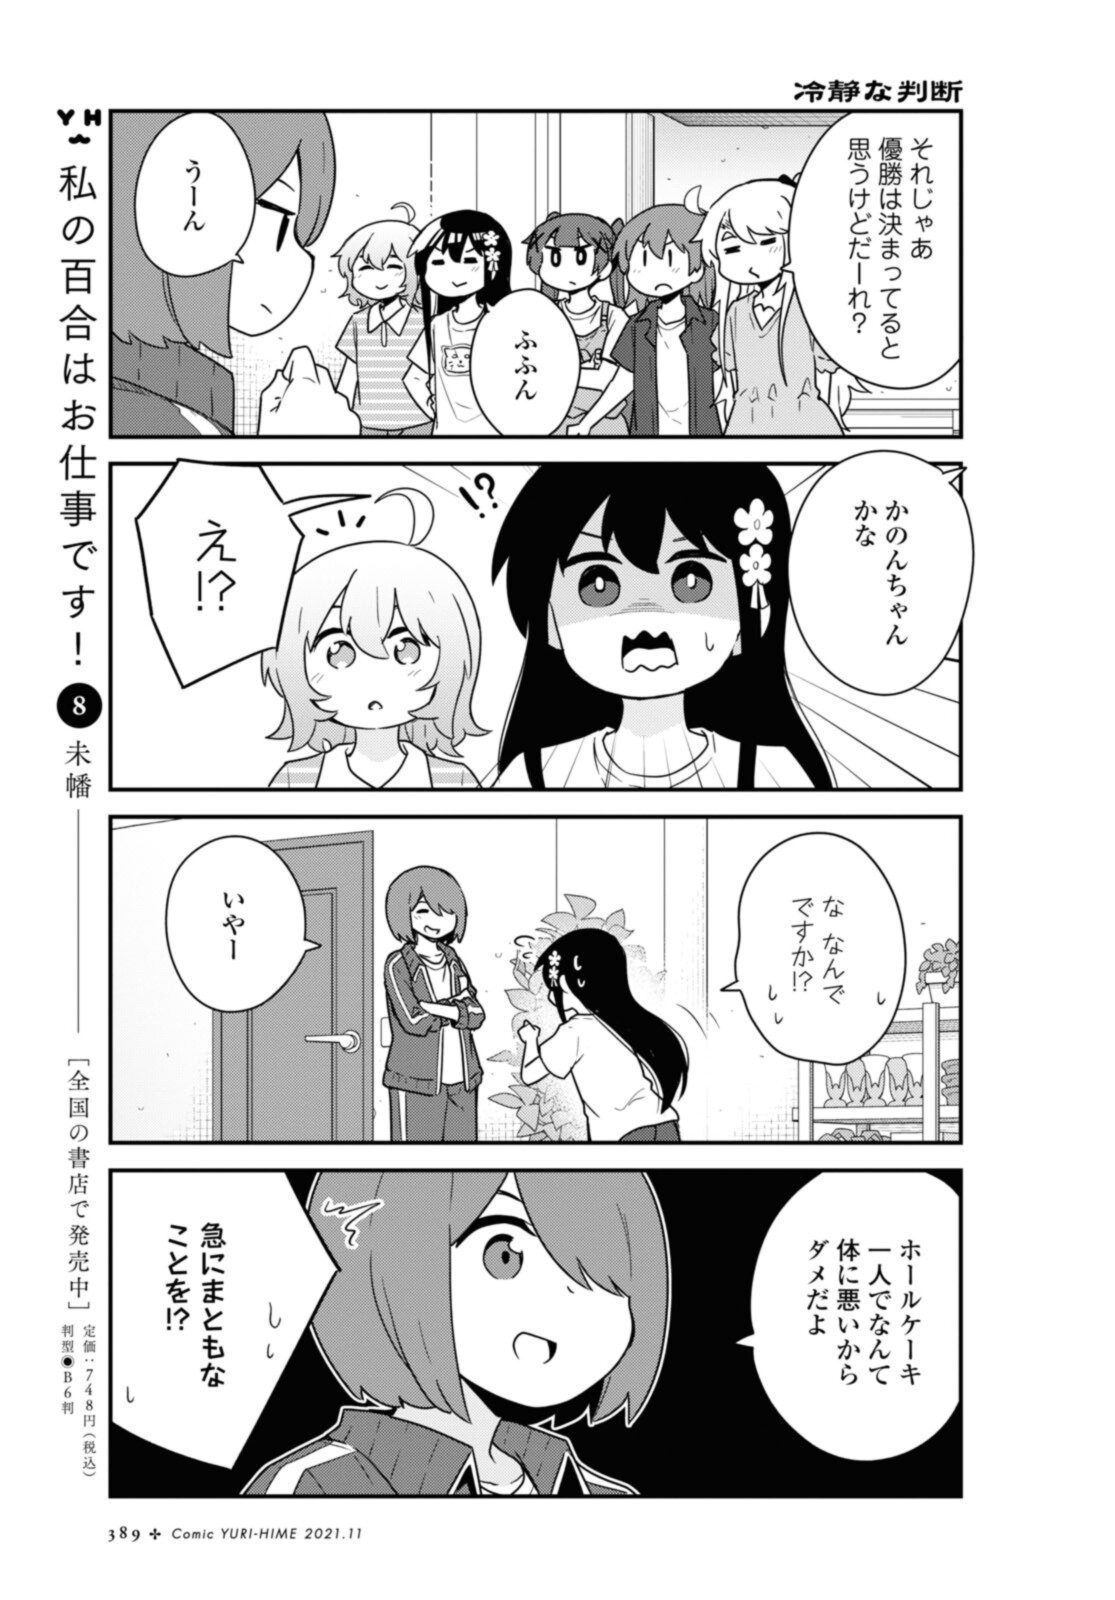 Watashi ni Tenshi ga Maiorita! - Chapter 88 - Page 2